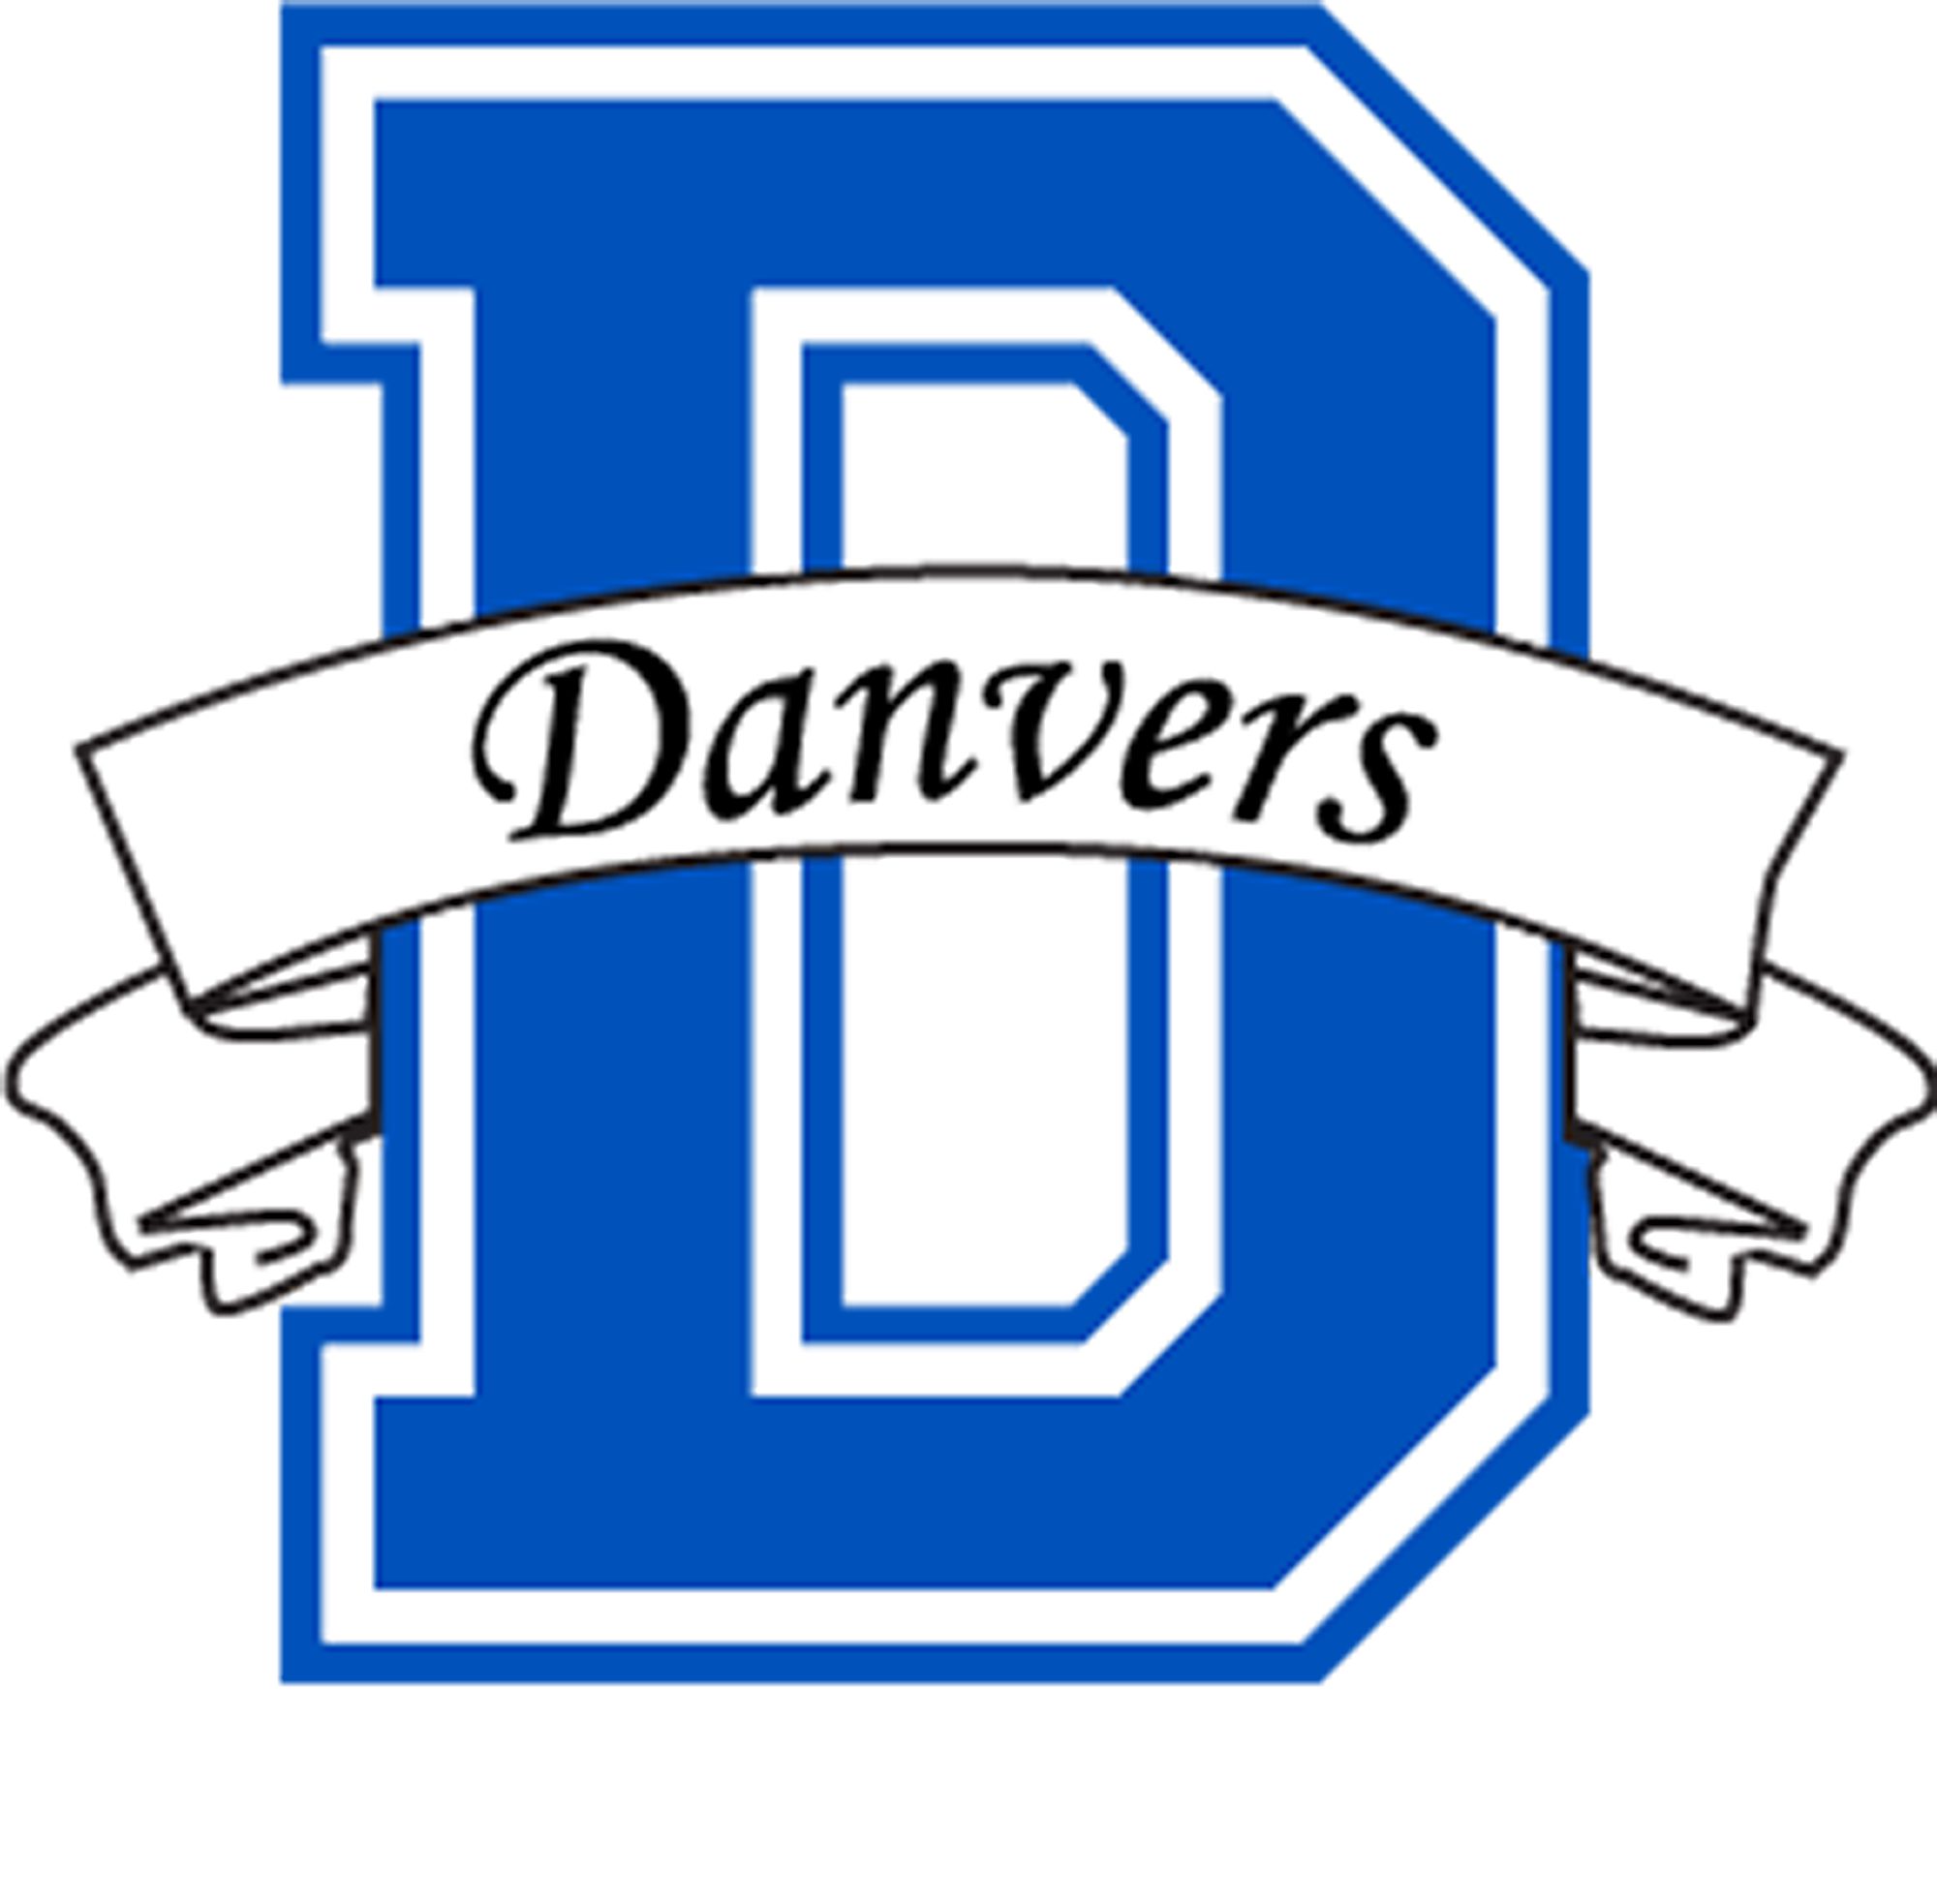 image of danvers public school logo